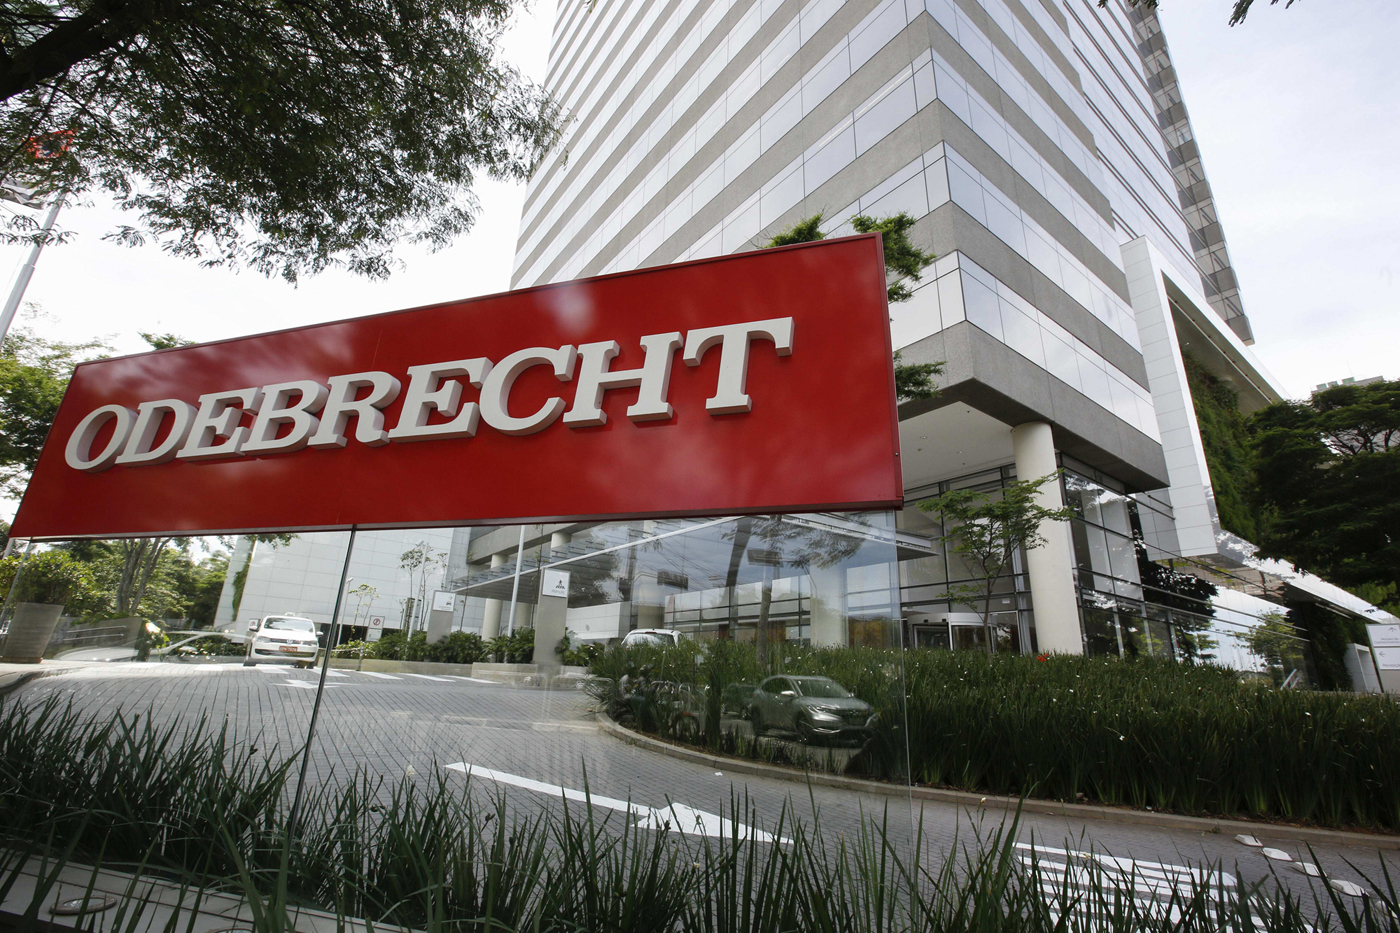 Declaración de culpabilidad de Odebrecht abre investigaciones por sobornos en Latinoamérica